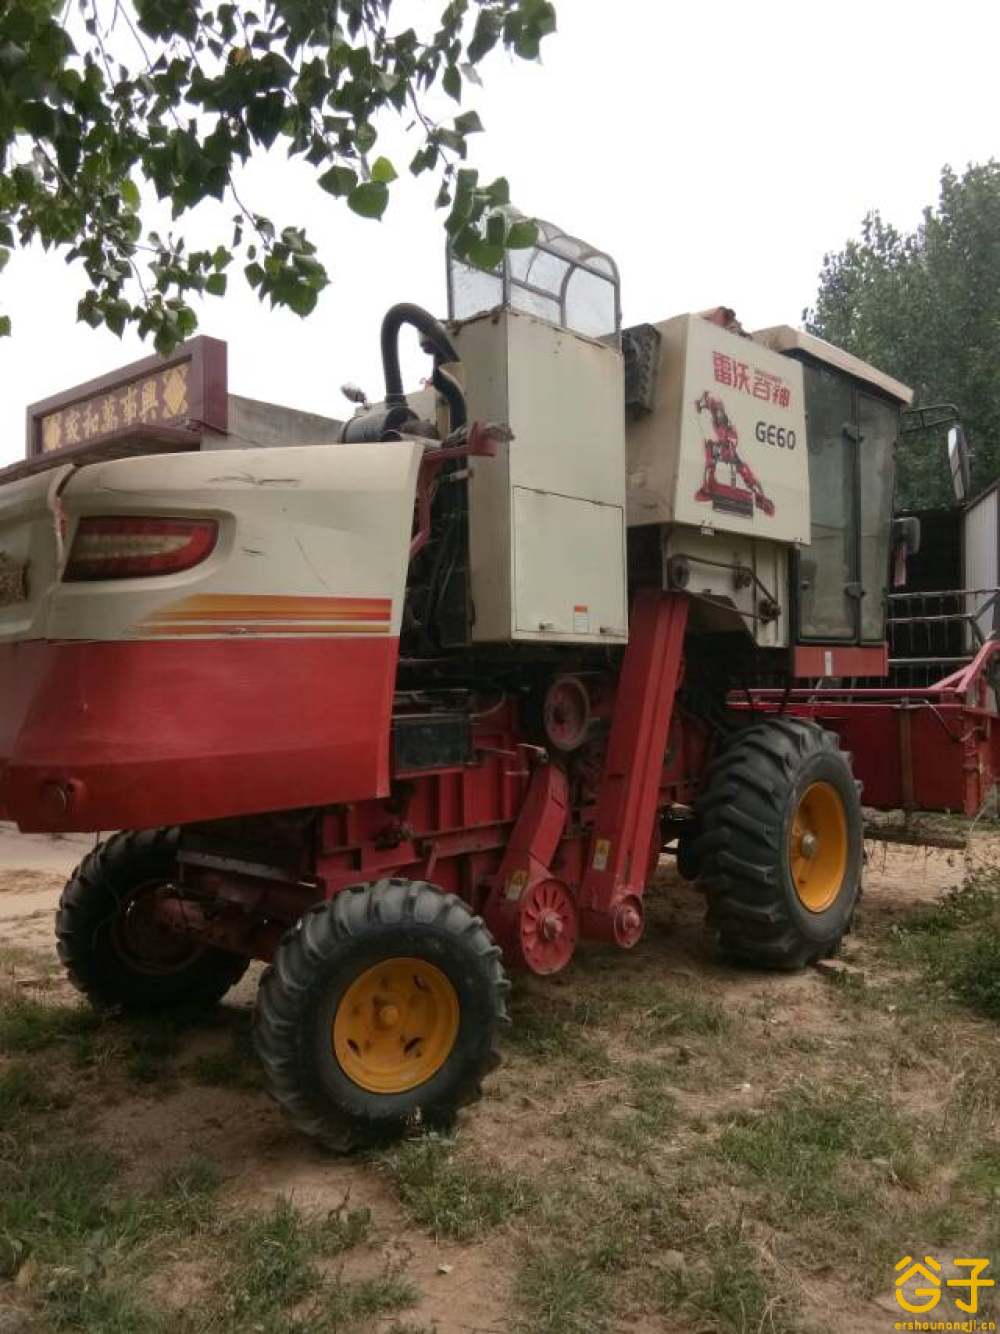 出售2015年福田雷沃ge60小麦收割机_河北衡水二手农机网_谷子二手农机